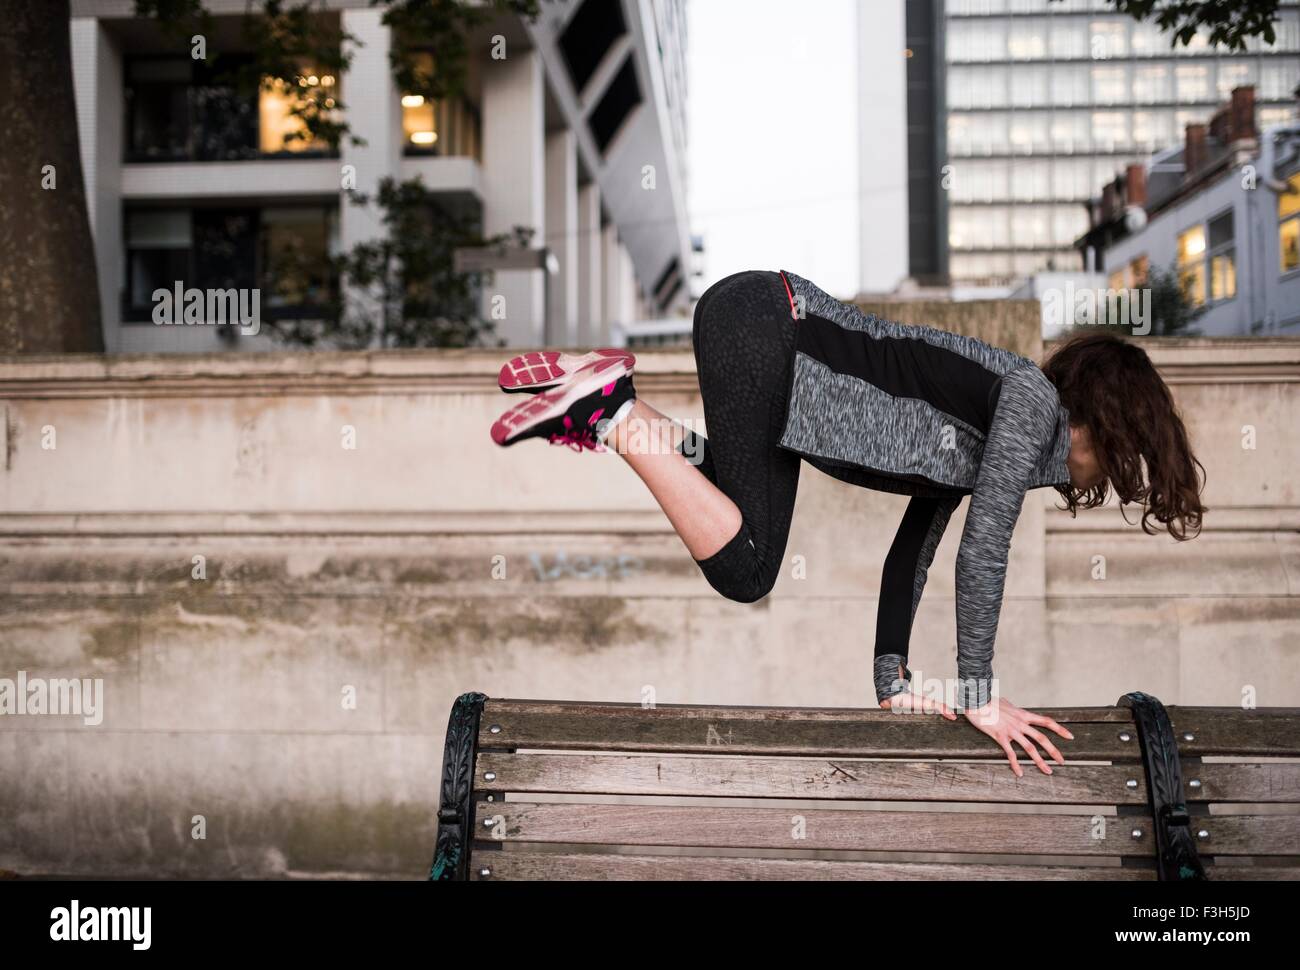 Jeune femme sautant au-dessus de banc de parc en ville Banque D'Images